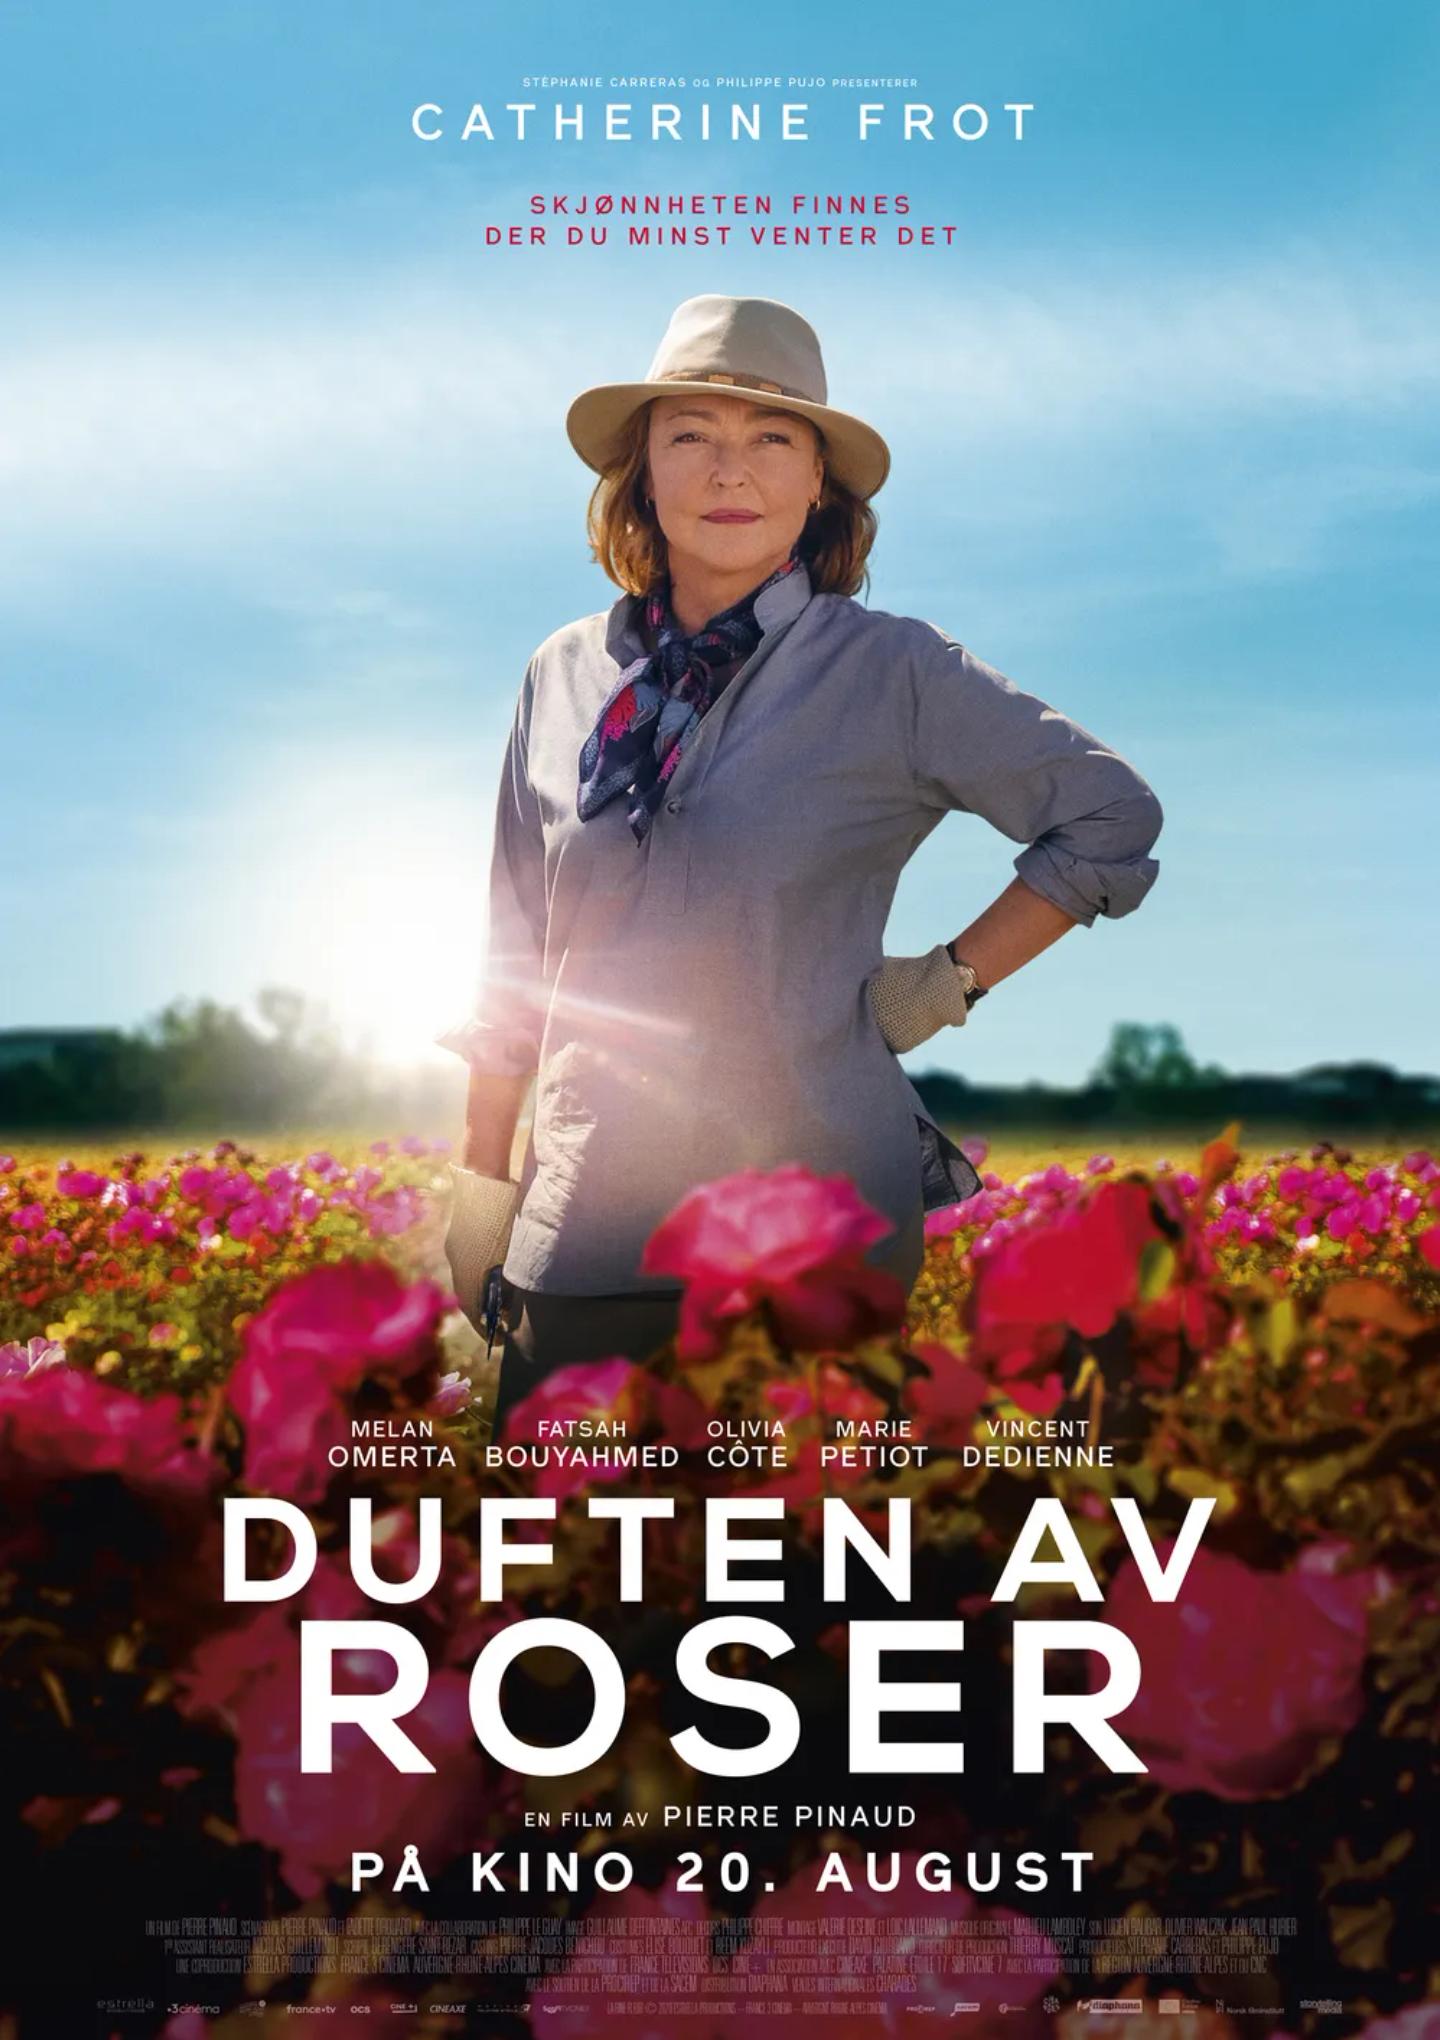 Plakat for 'Duften av roser'